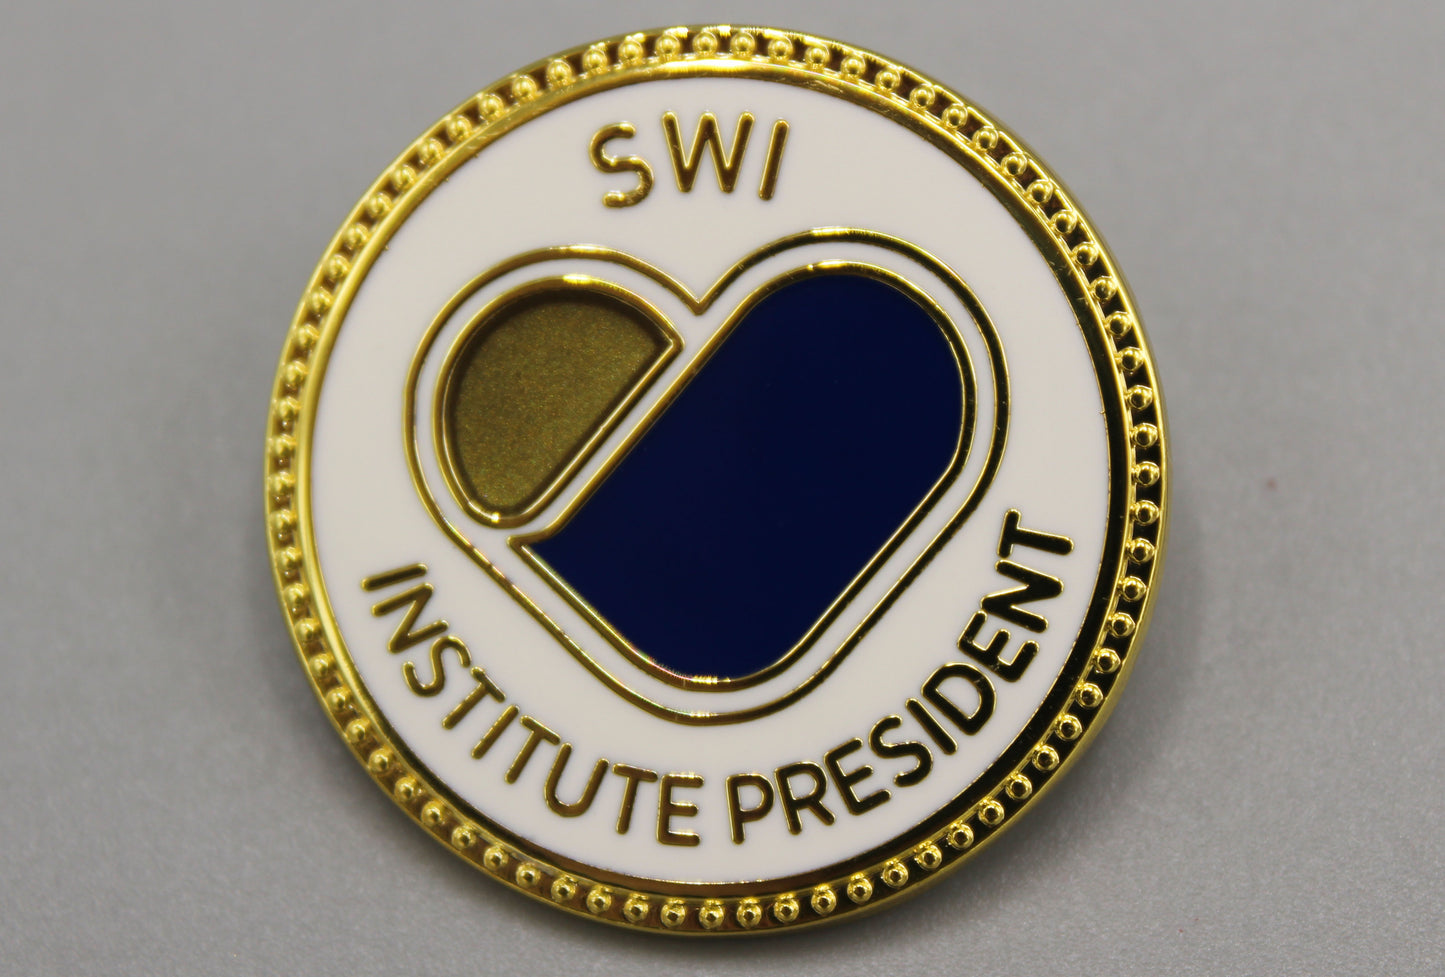 SWI Institute Badges